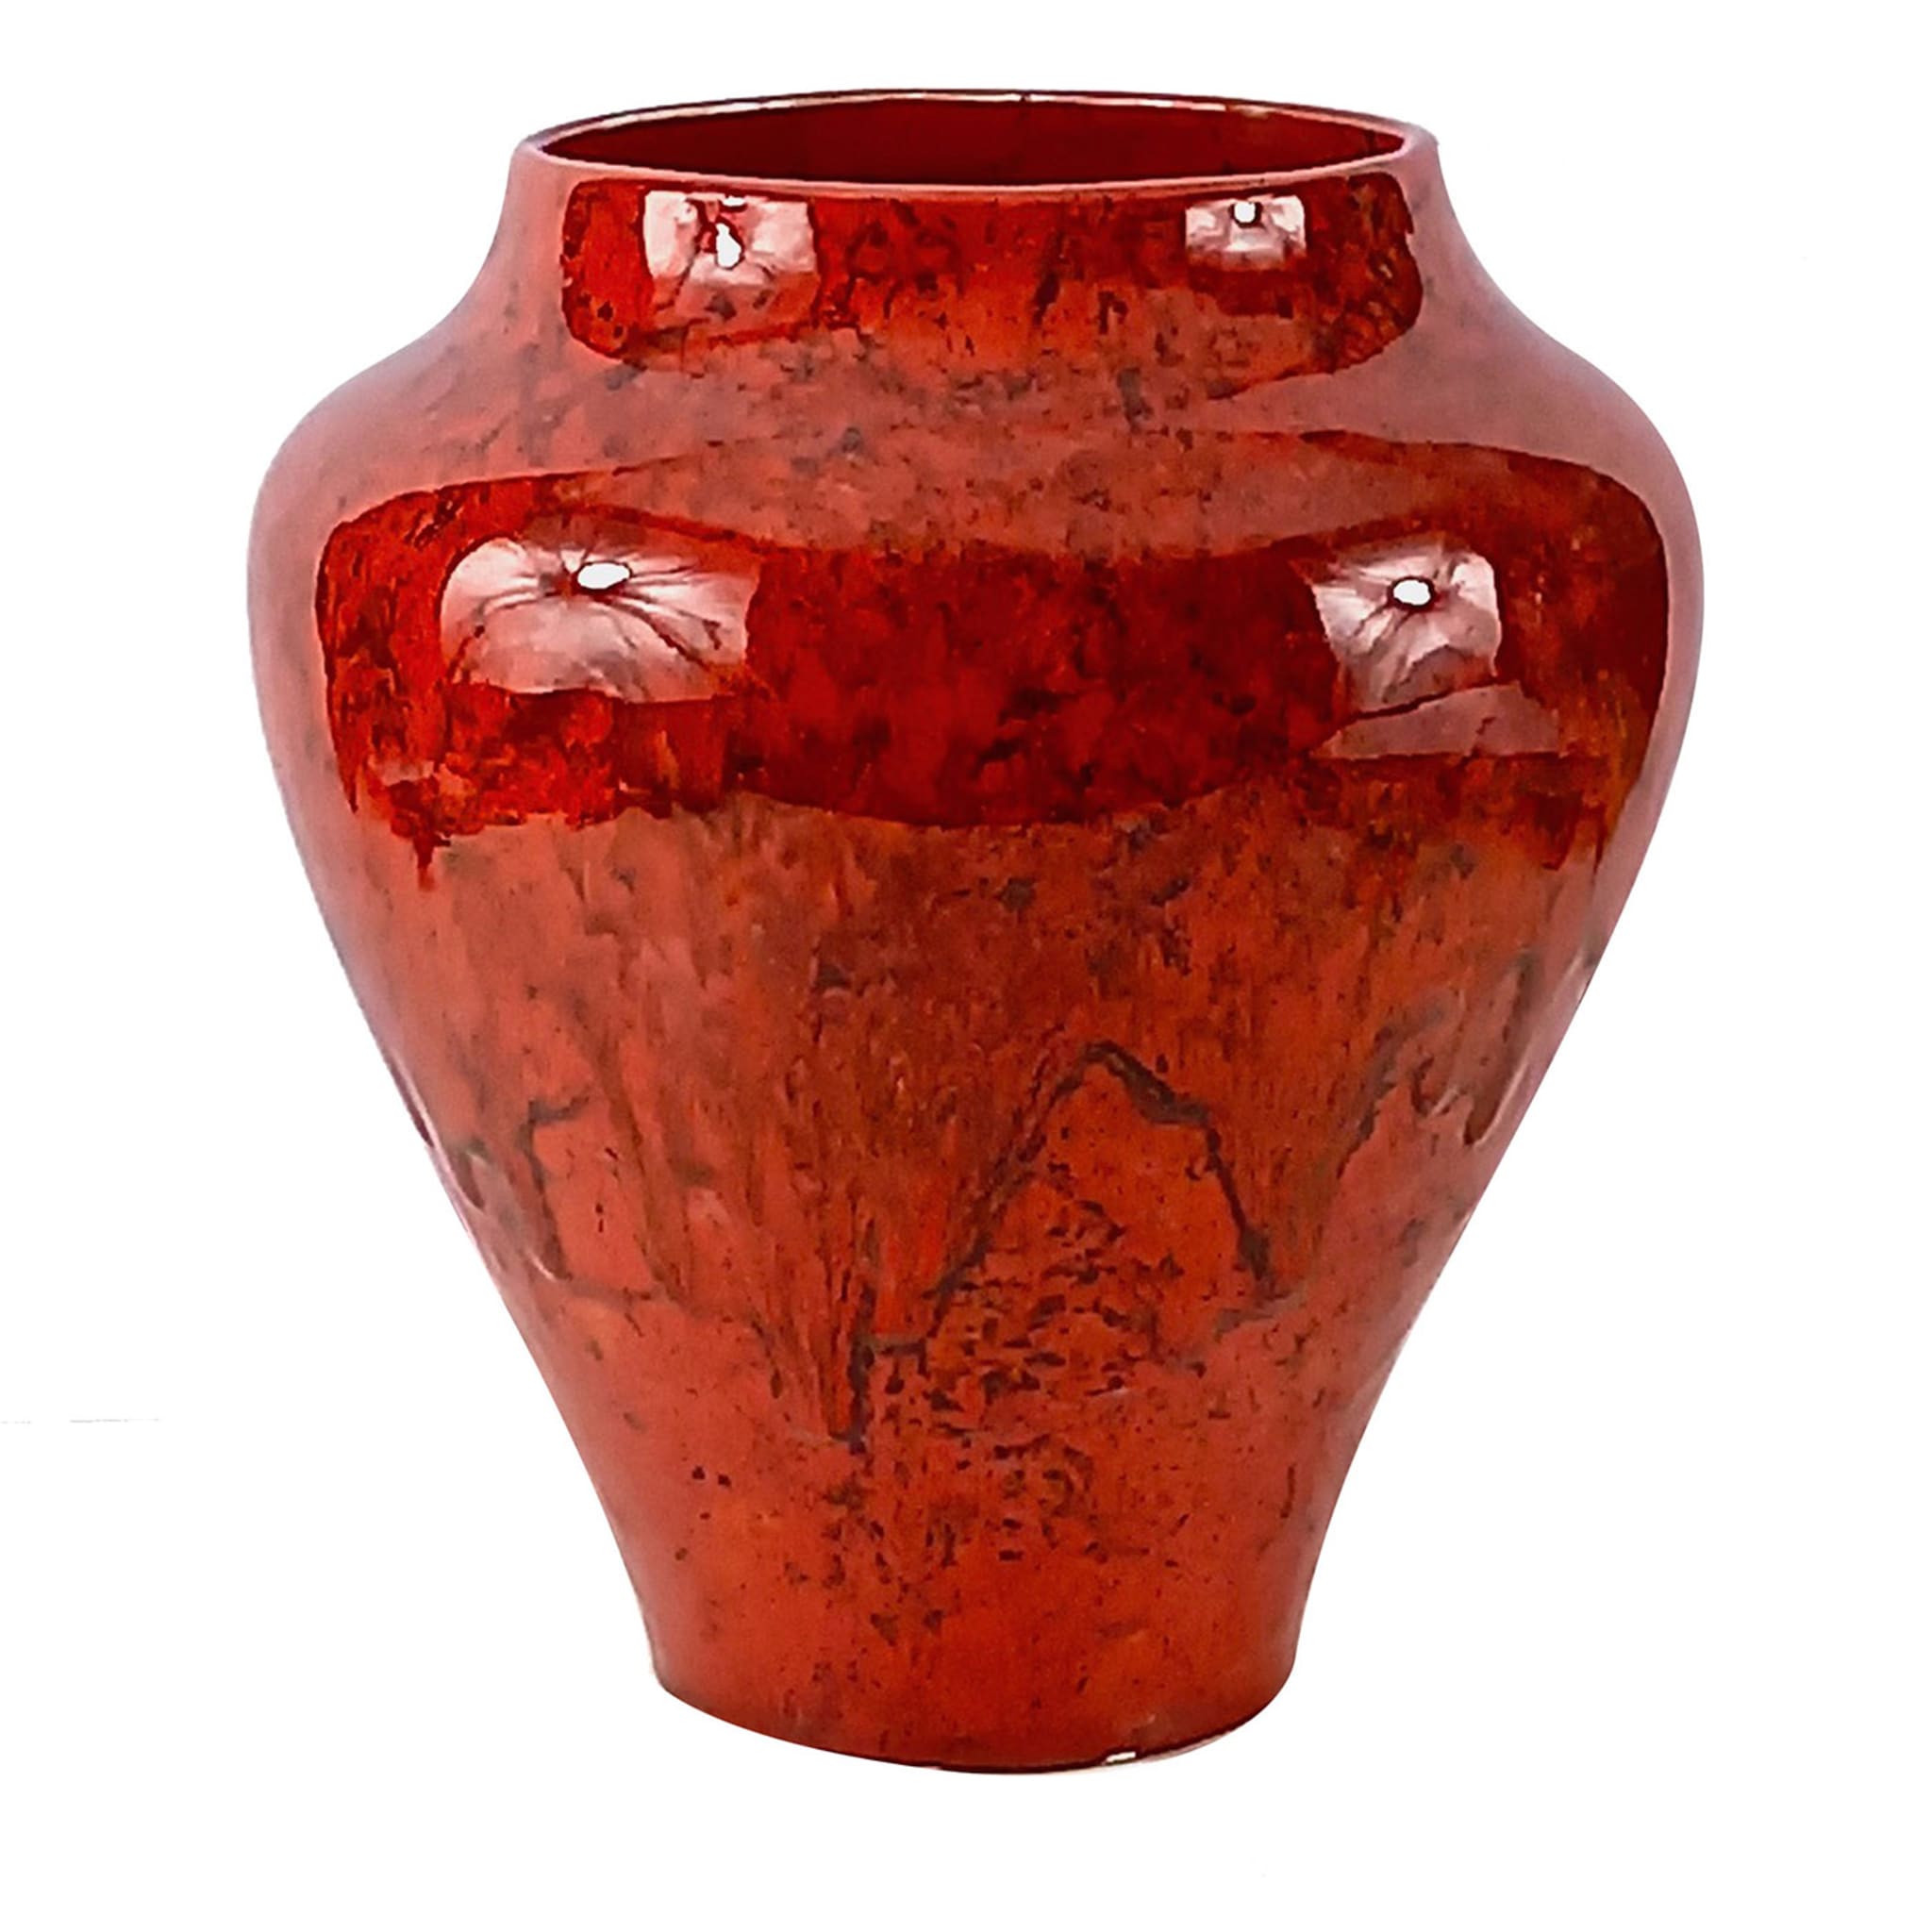 Gran Rosso Ceramic Vase #1 - Main view